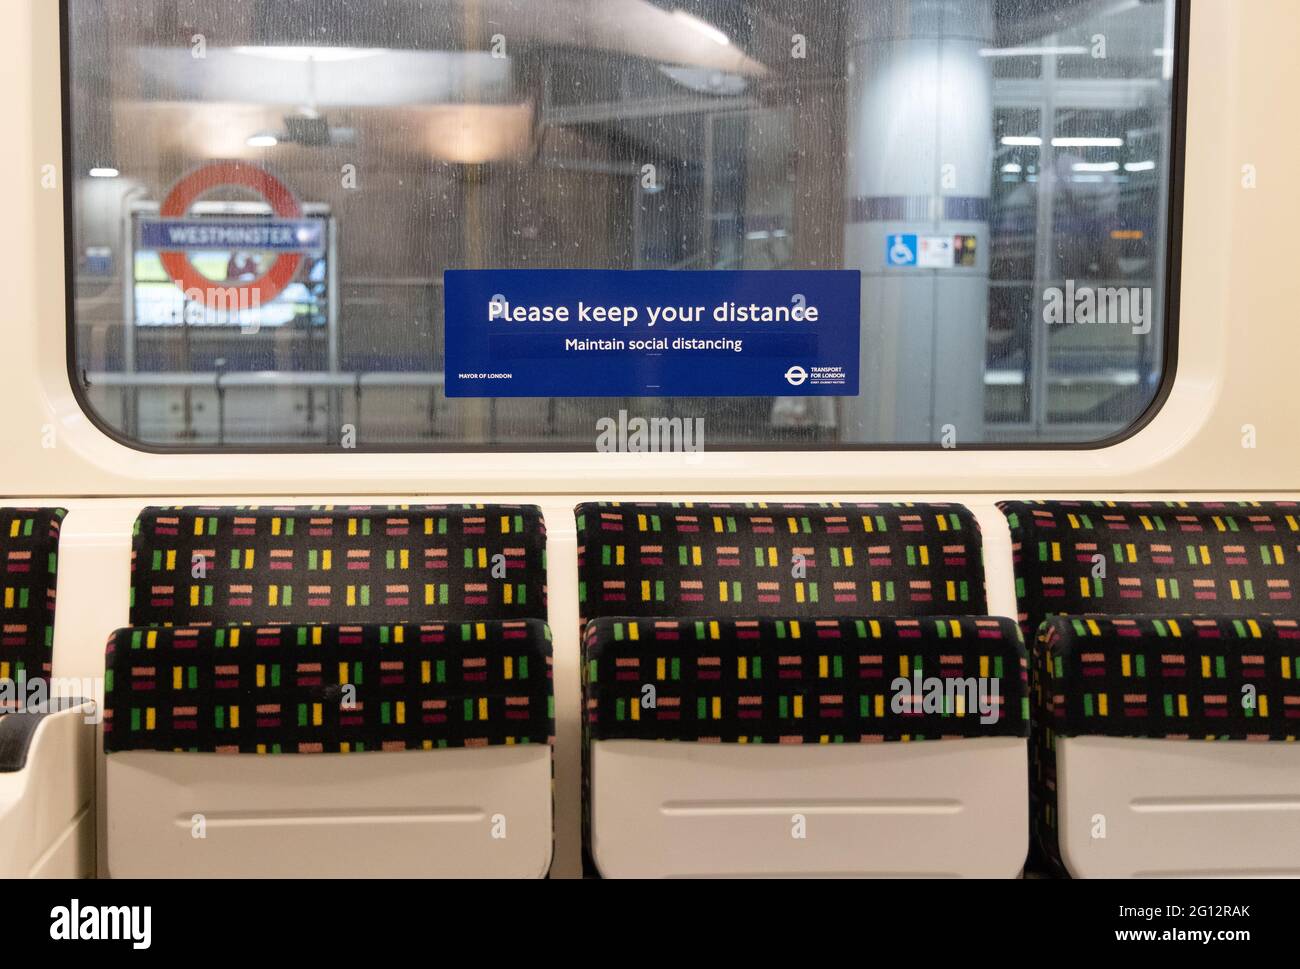 Social distancing UK; un panneau « Please Keep Your distance » sur le métro de londres, en raison de la pandémie COVID 19, le tube, Londres UK Banque D'Images